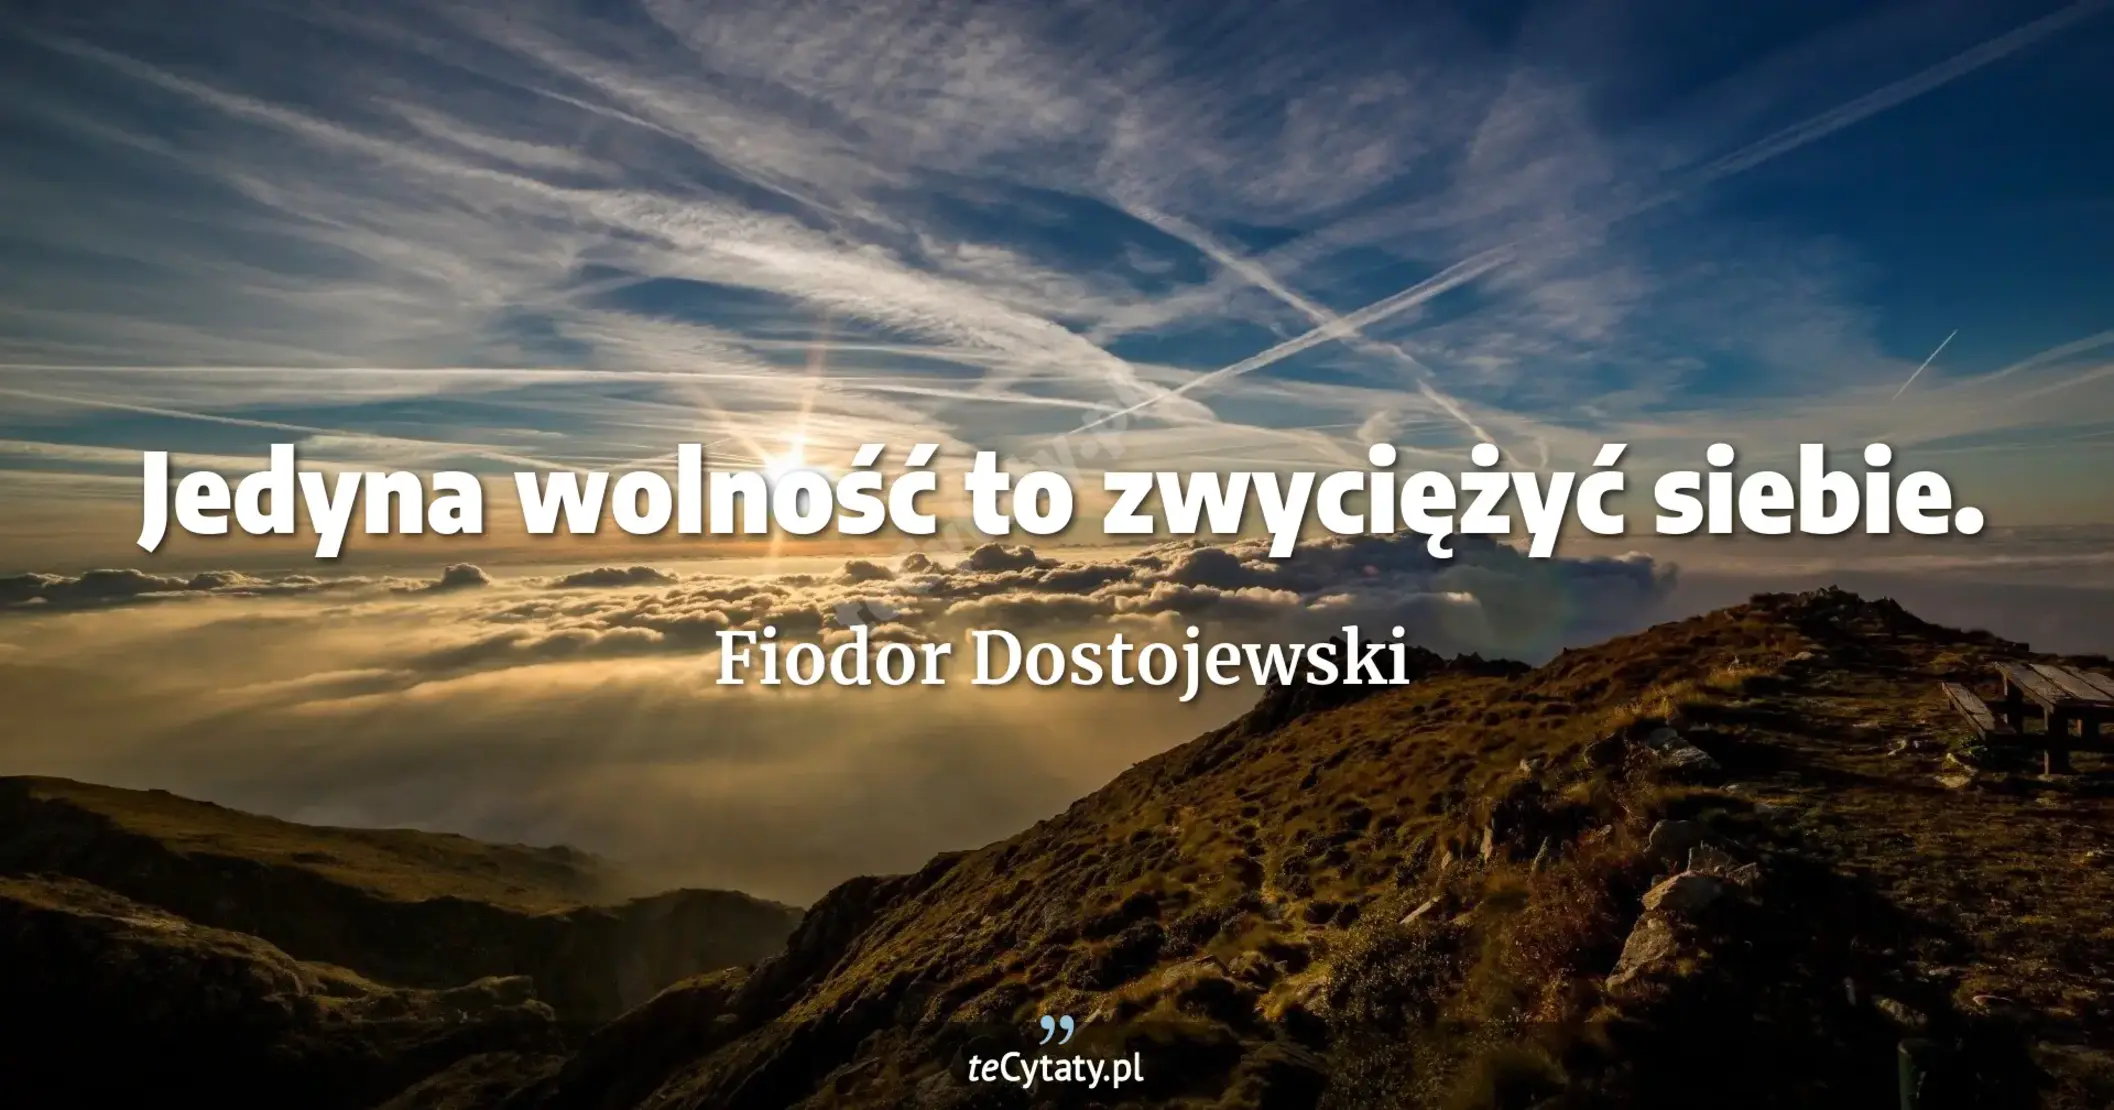 Jedyna wolność to zwyciężyć siebie. - Fiodor Dostojewski